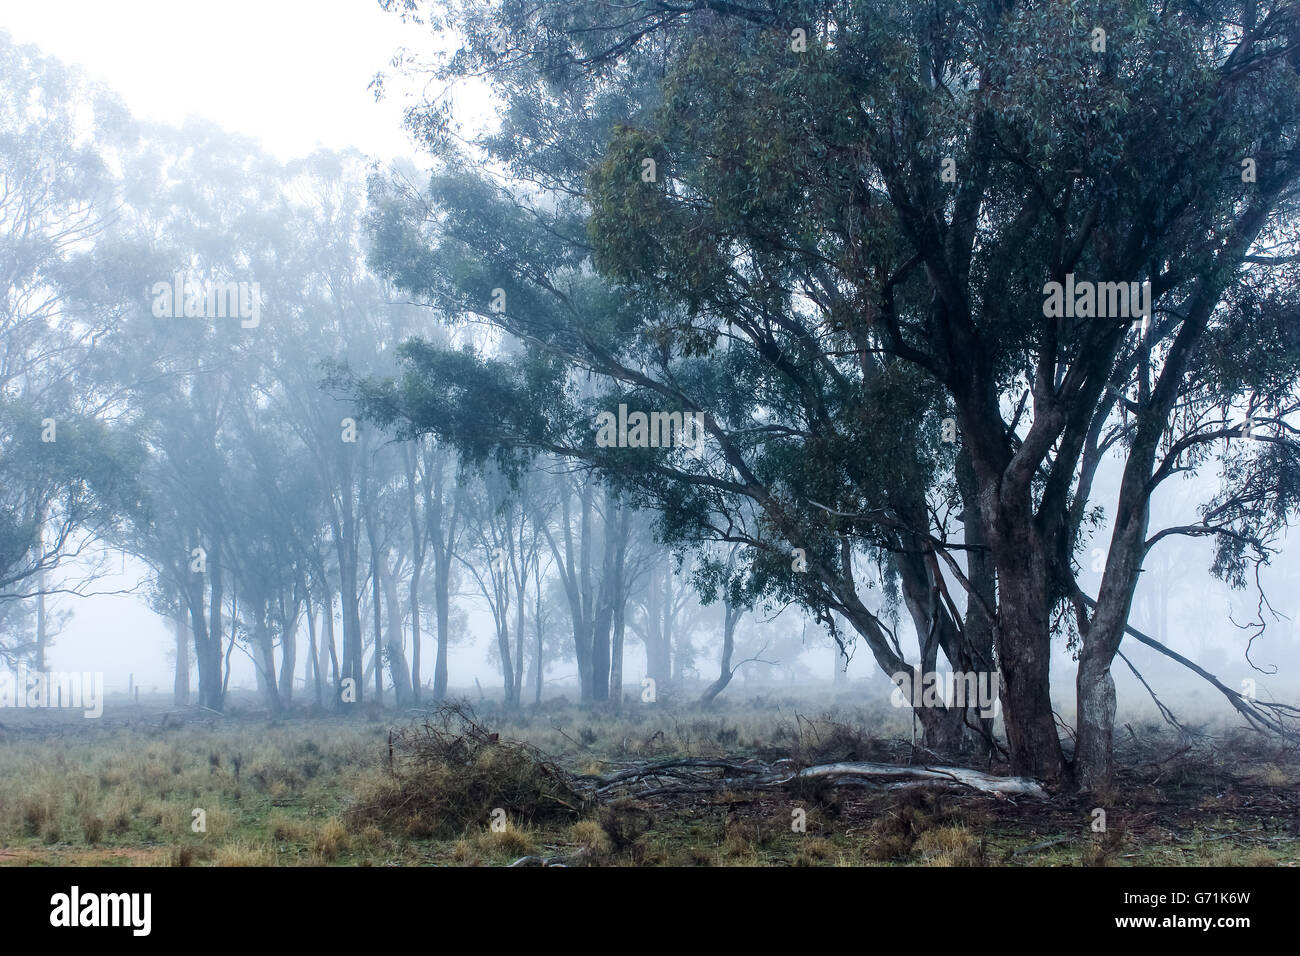 Tôt le matin, promenade dans la campagne dans le brouillard et le gel. Faible visibilité Banque D'Images